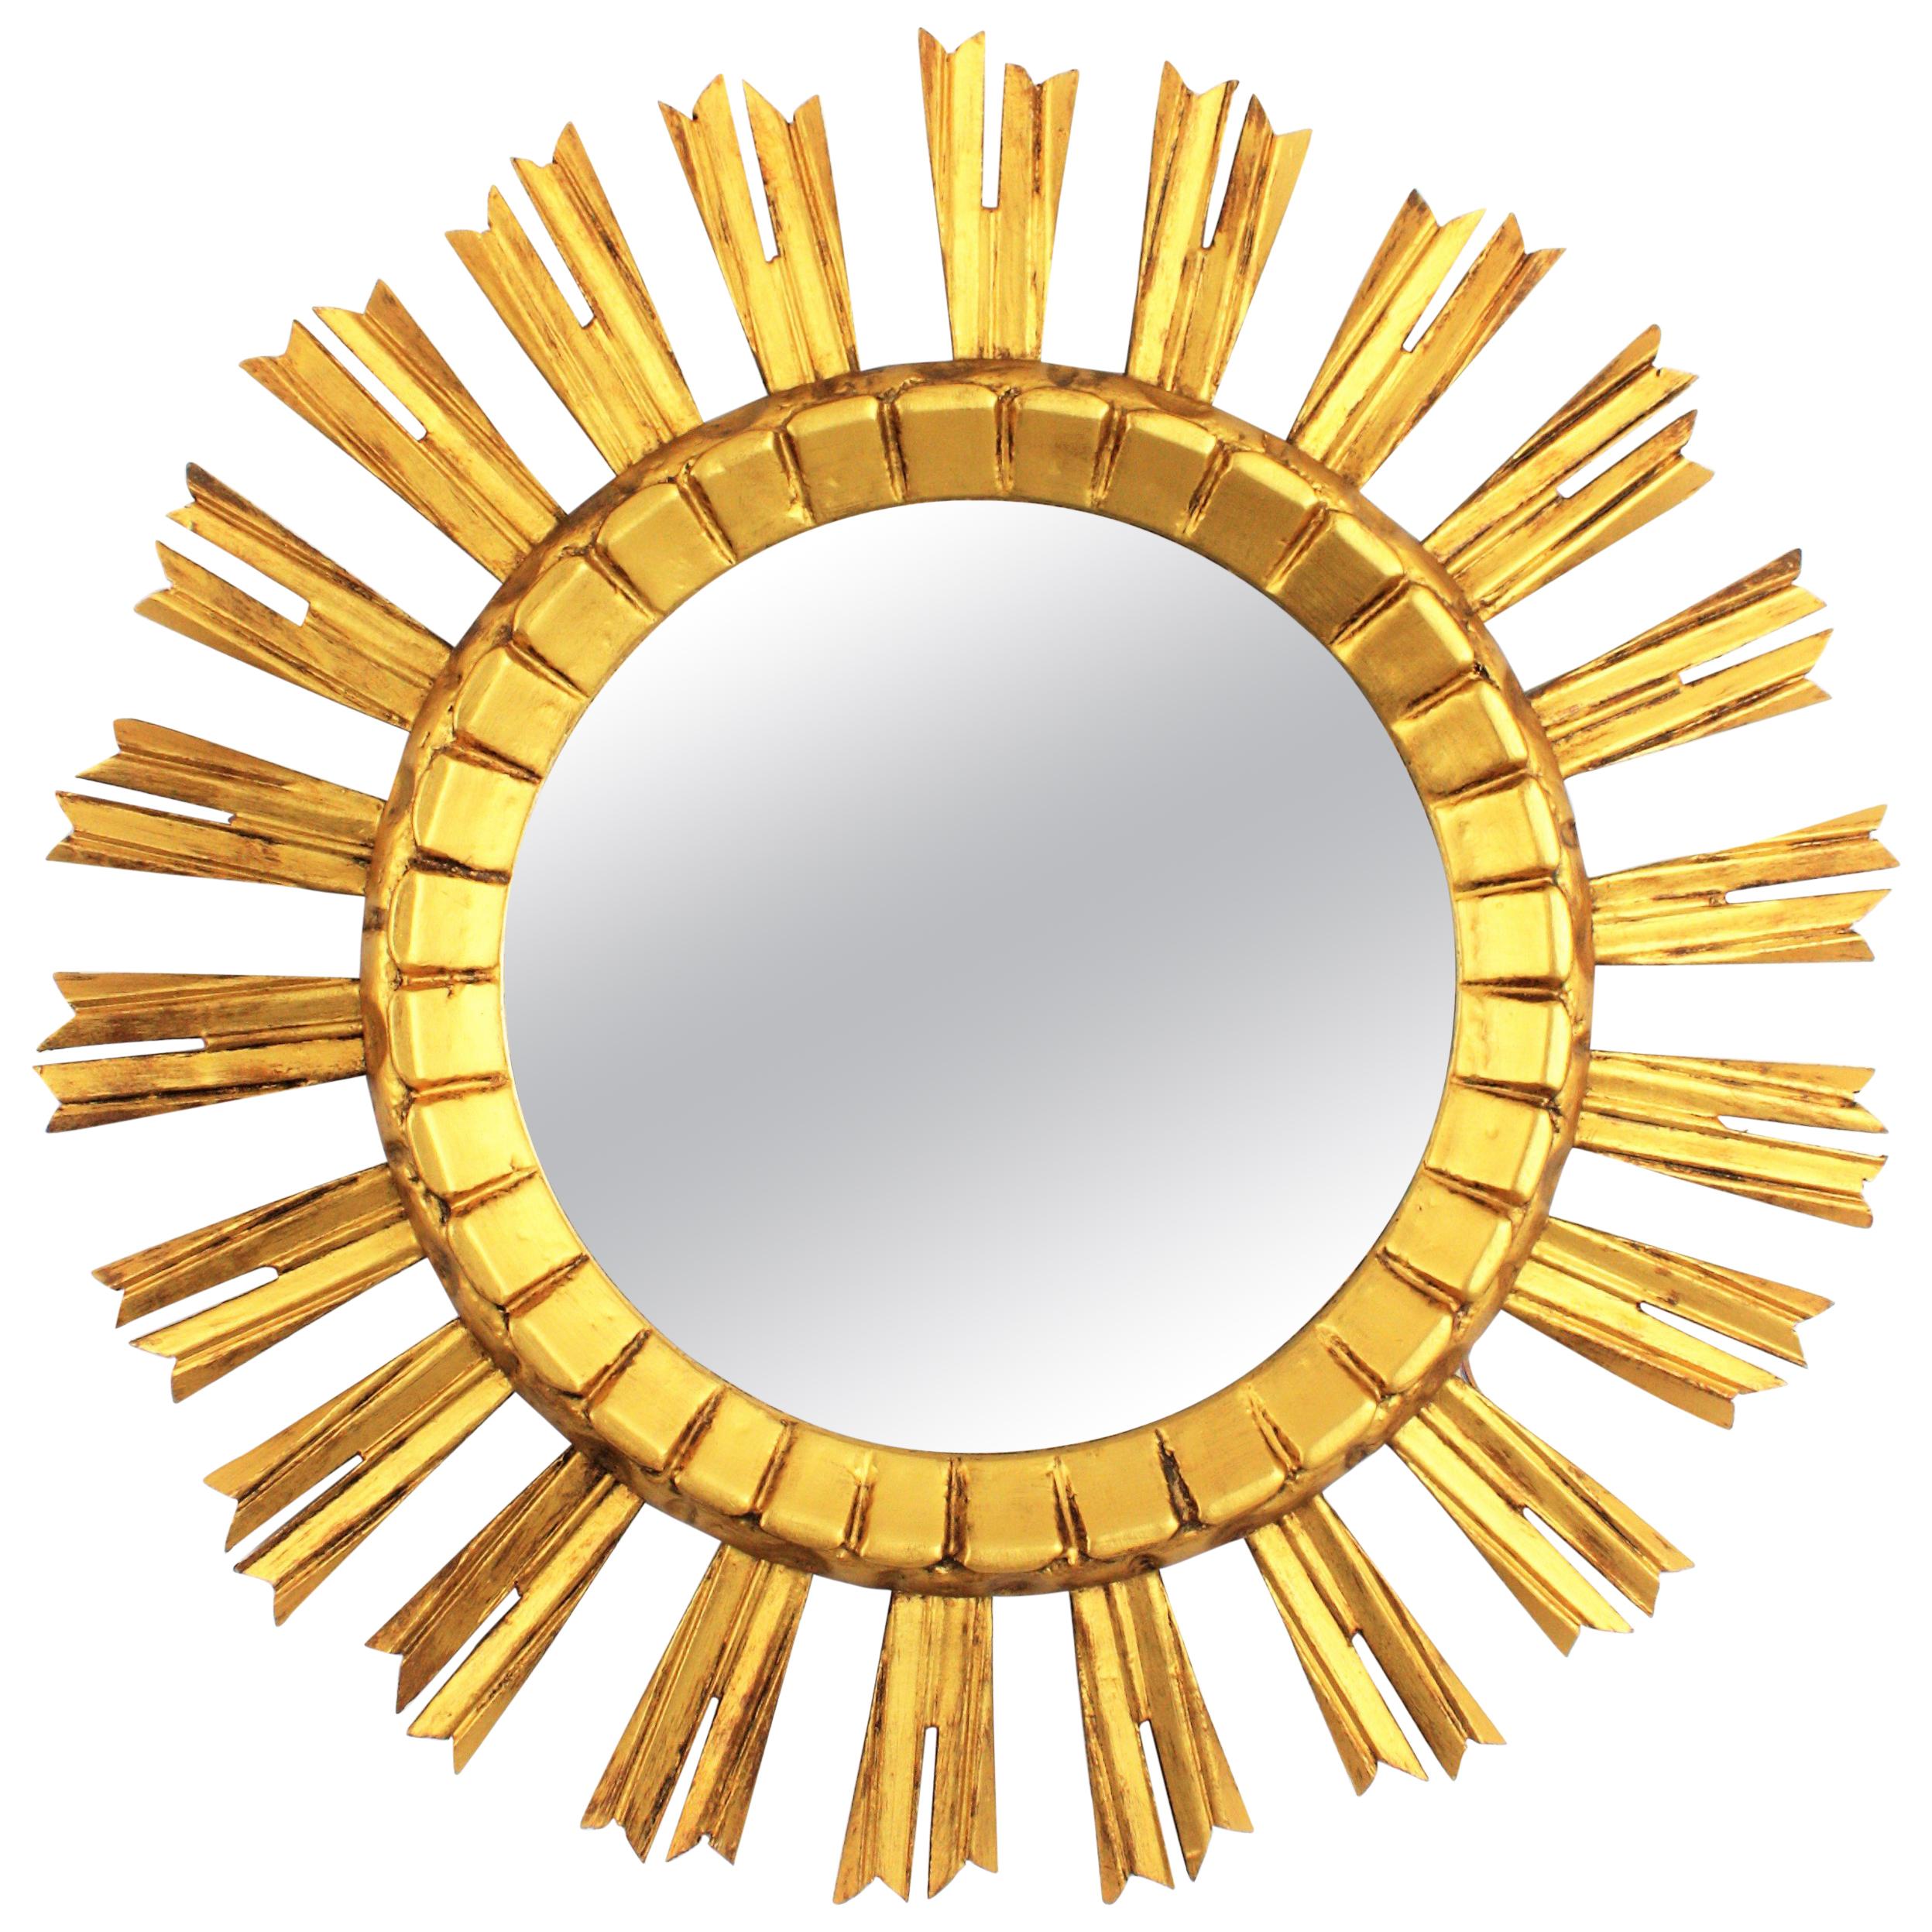 Auffälliger Wandspiegel im Barockstil mit Sonnen- und Sterneneffekten. Frankreich, 1930er Jahre. 
Der Spiegel ist aus geschnitztem Holz gefertigt, mit Gesso überzogen und vergoldet.
Wunderschön allein oder in einer Wandkomposition mit anderen